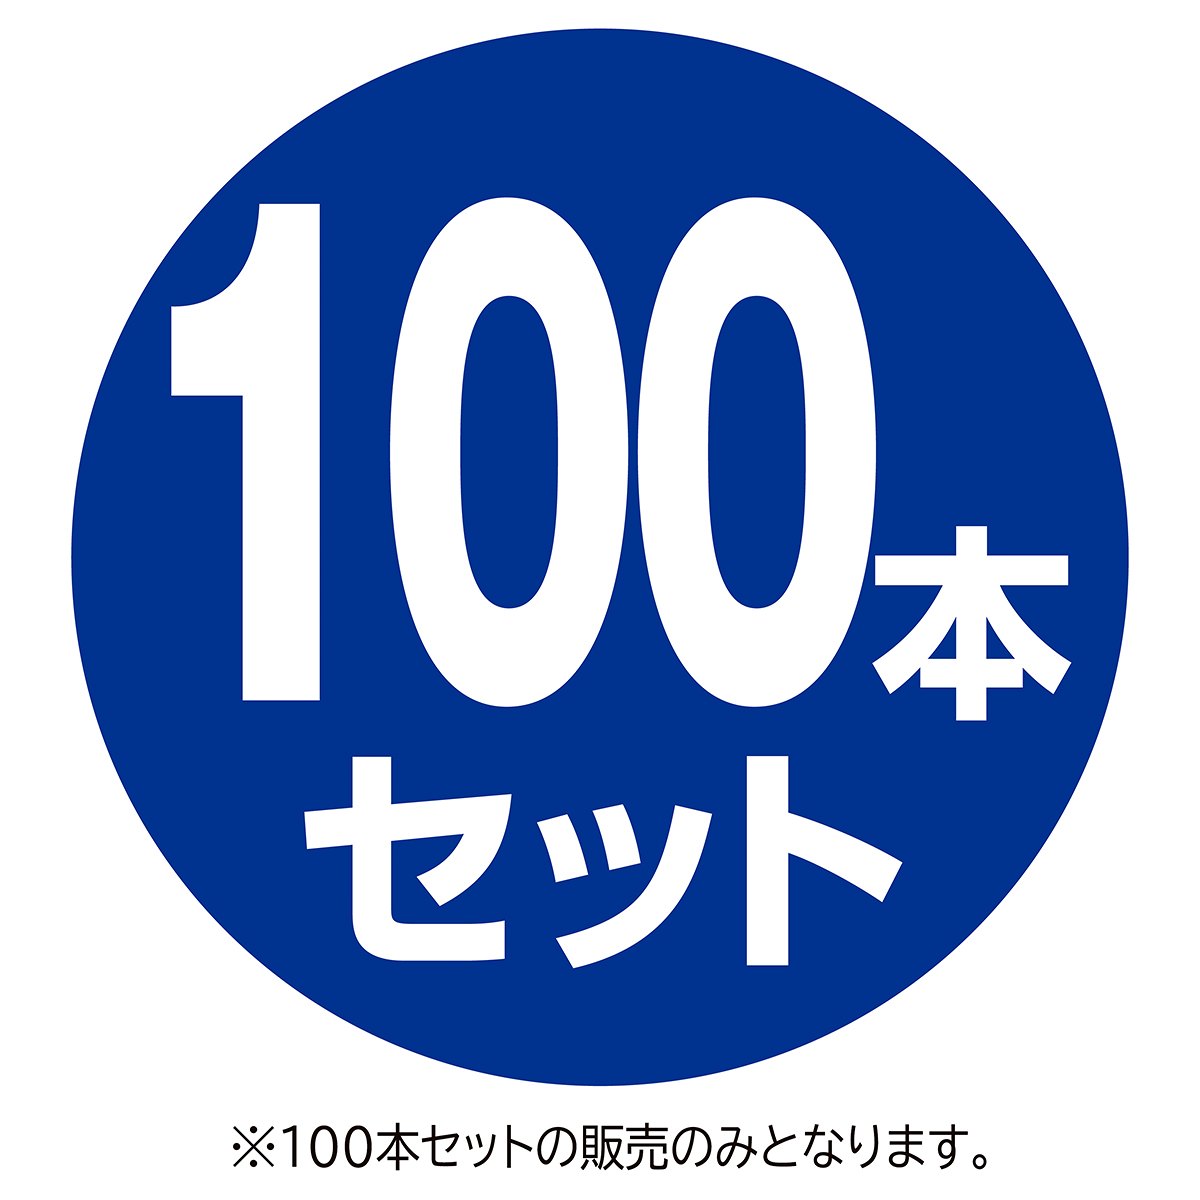 100本】子供用木製ハンガークリアトップス幅30.5cm【通販】ストア